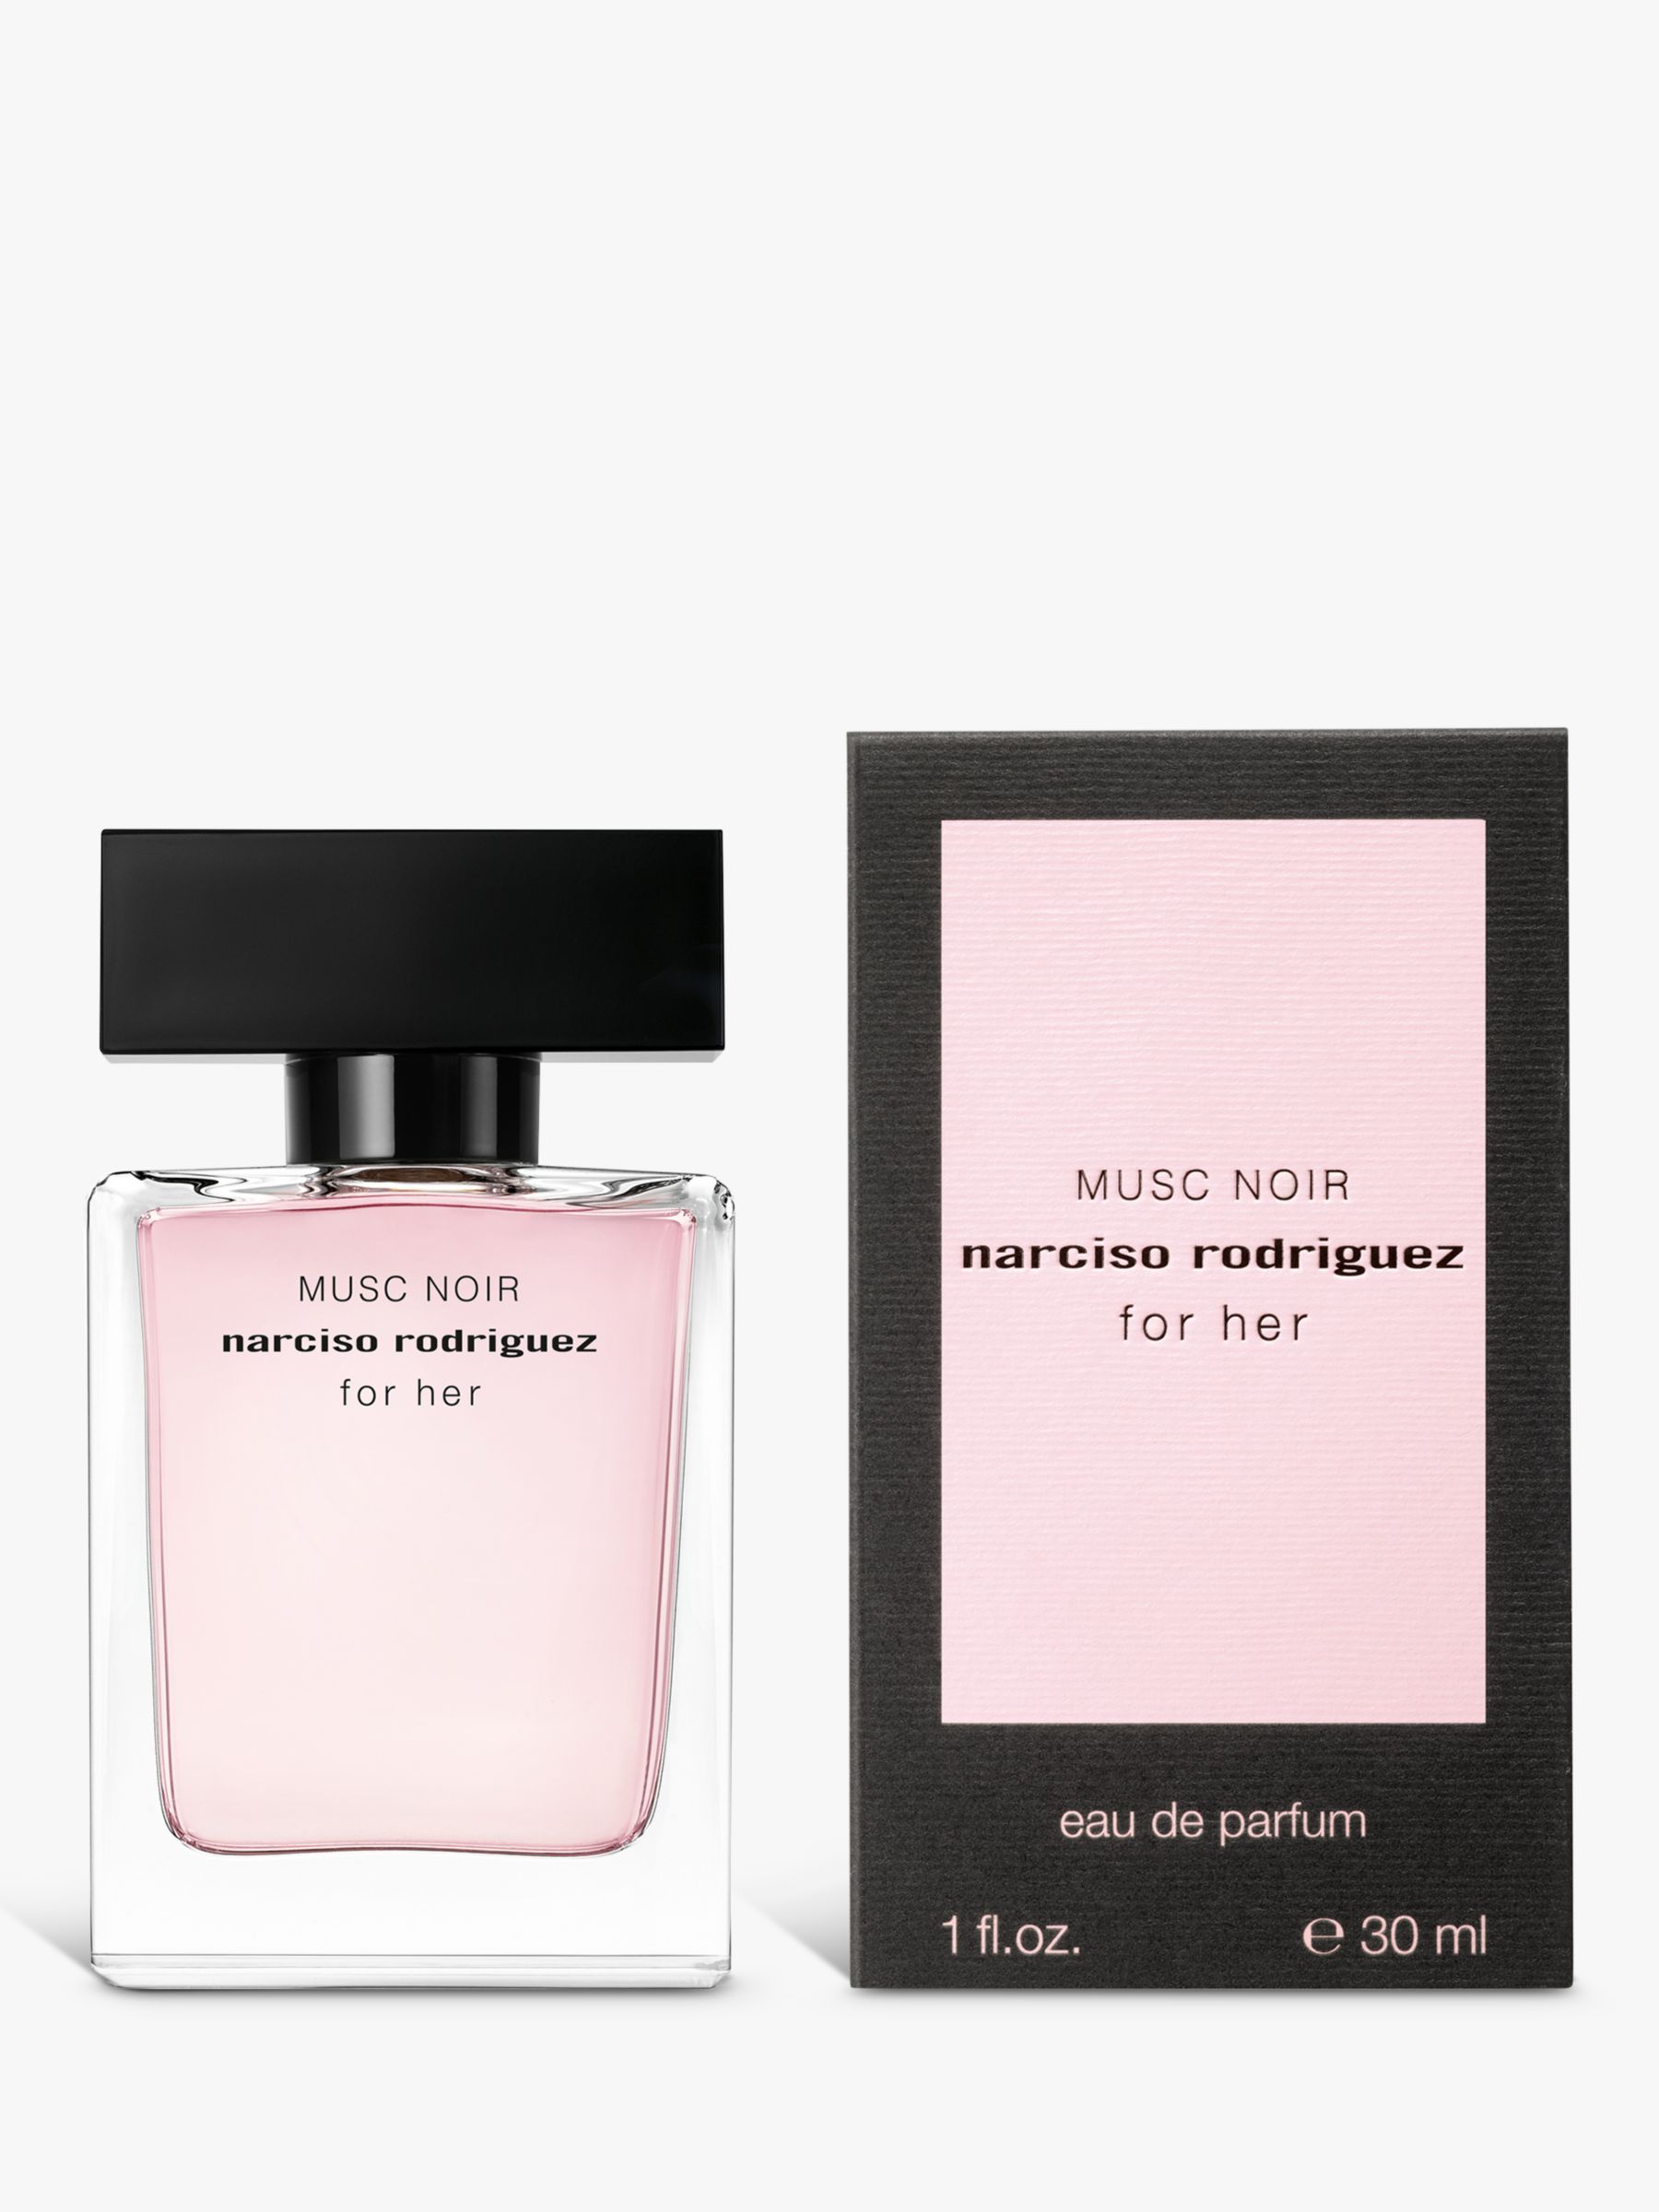 Narciso Rodriguez For Her Musc Noir Eau de Parfum at John Lewis & Partners